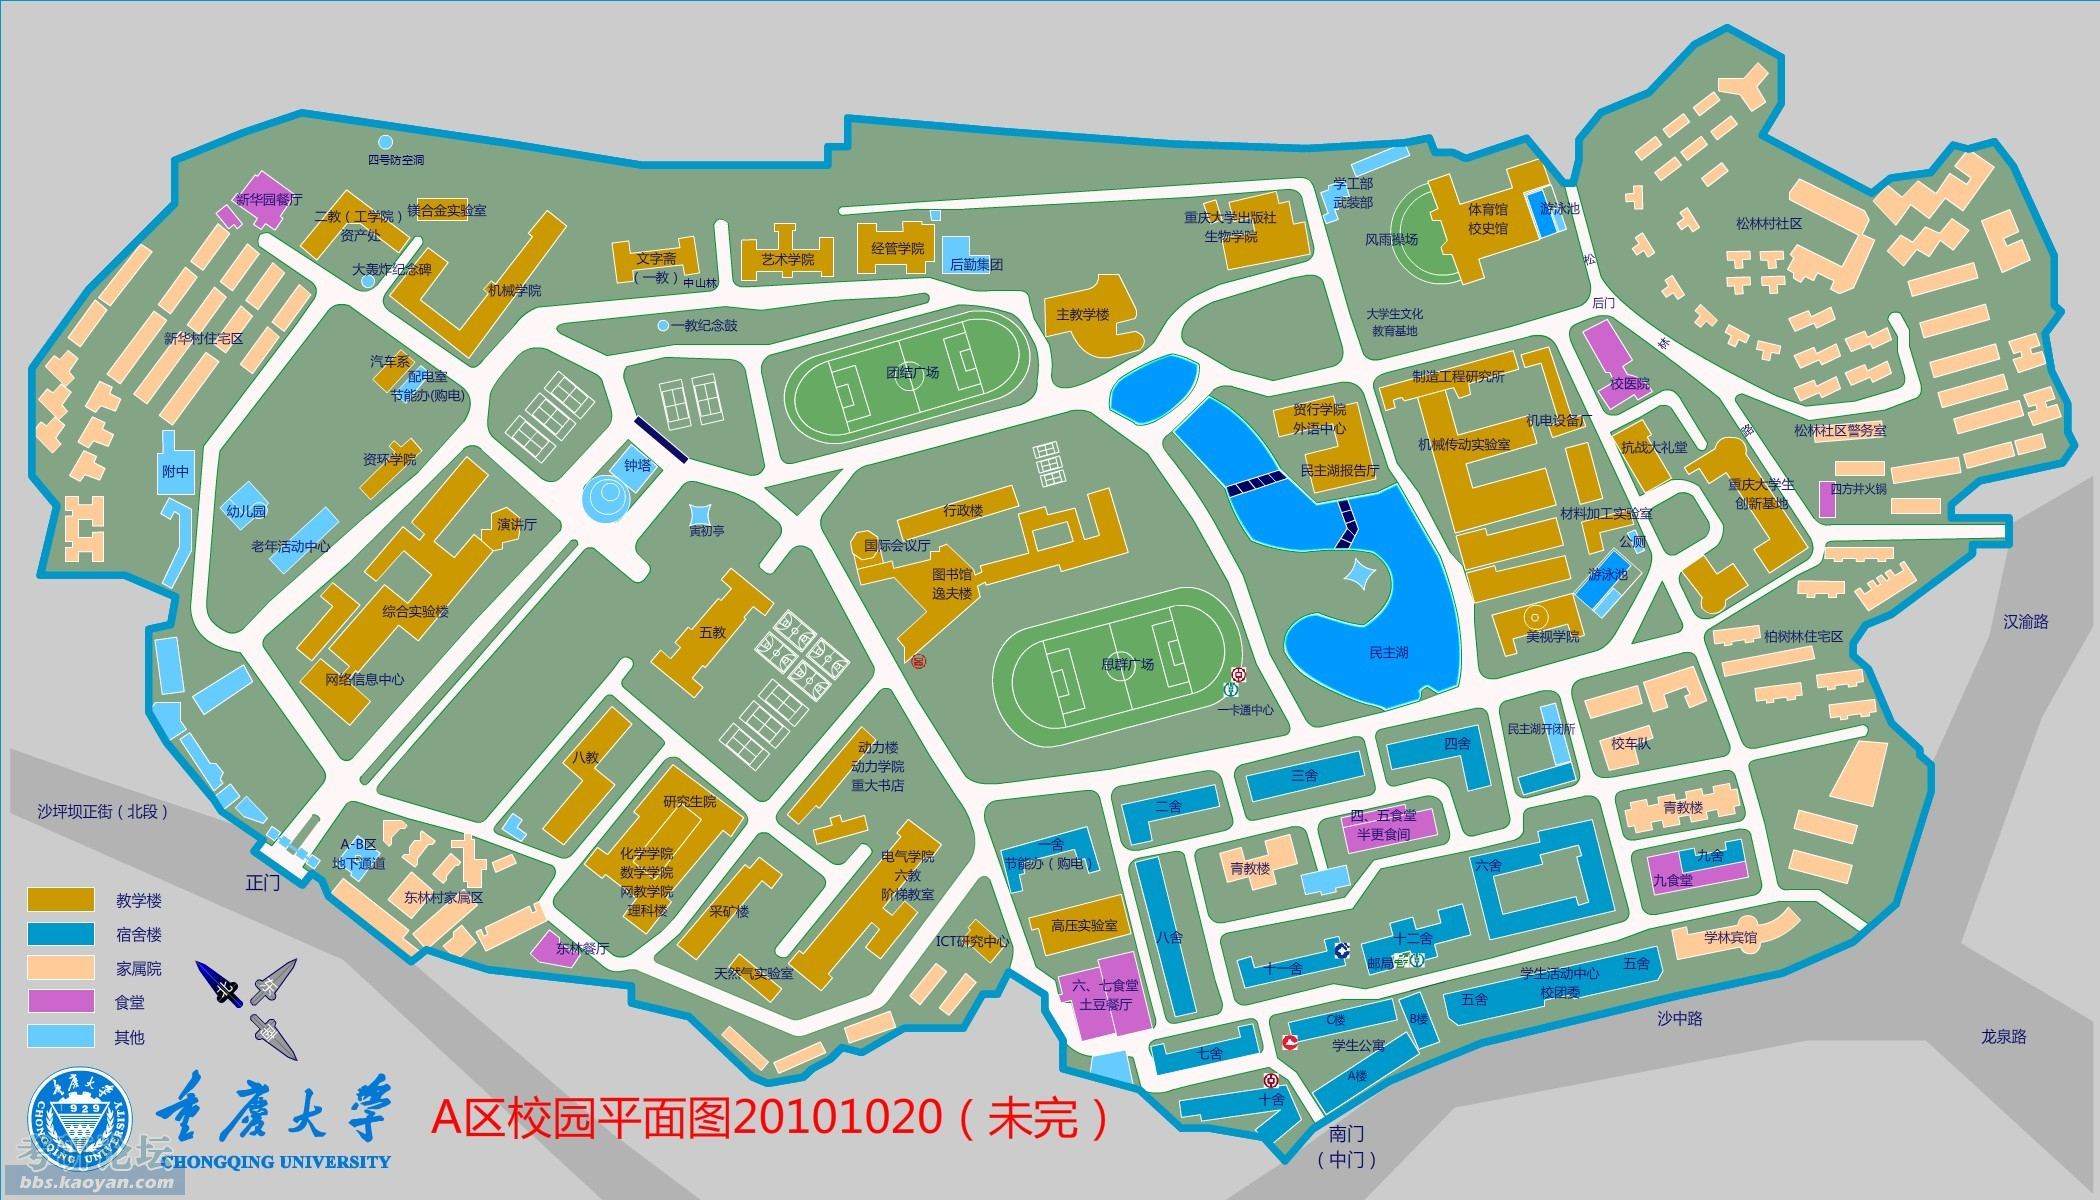 重庆大学 69 【地图】来重大参加复试的看一下 重庆大学高清地图